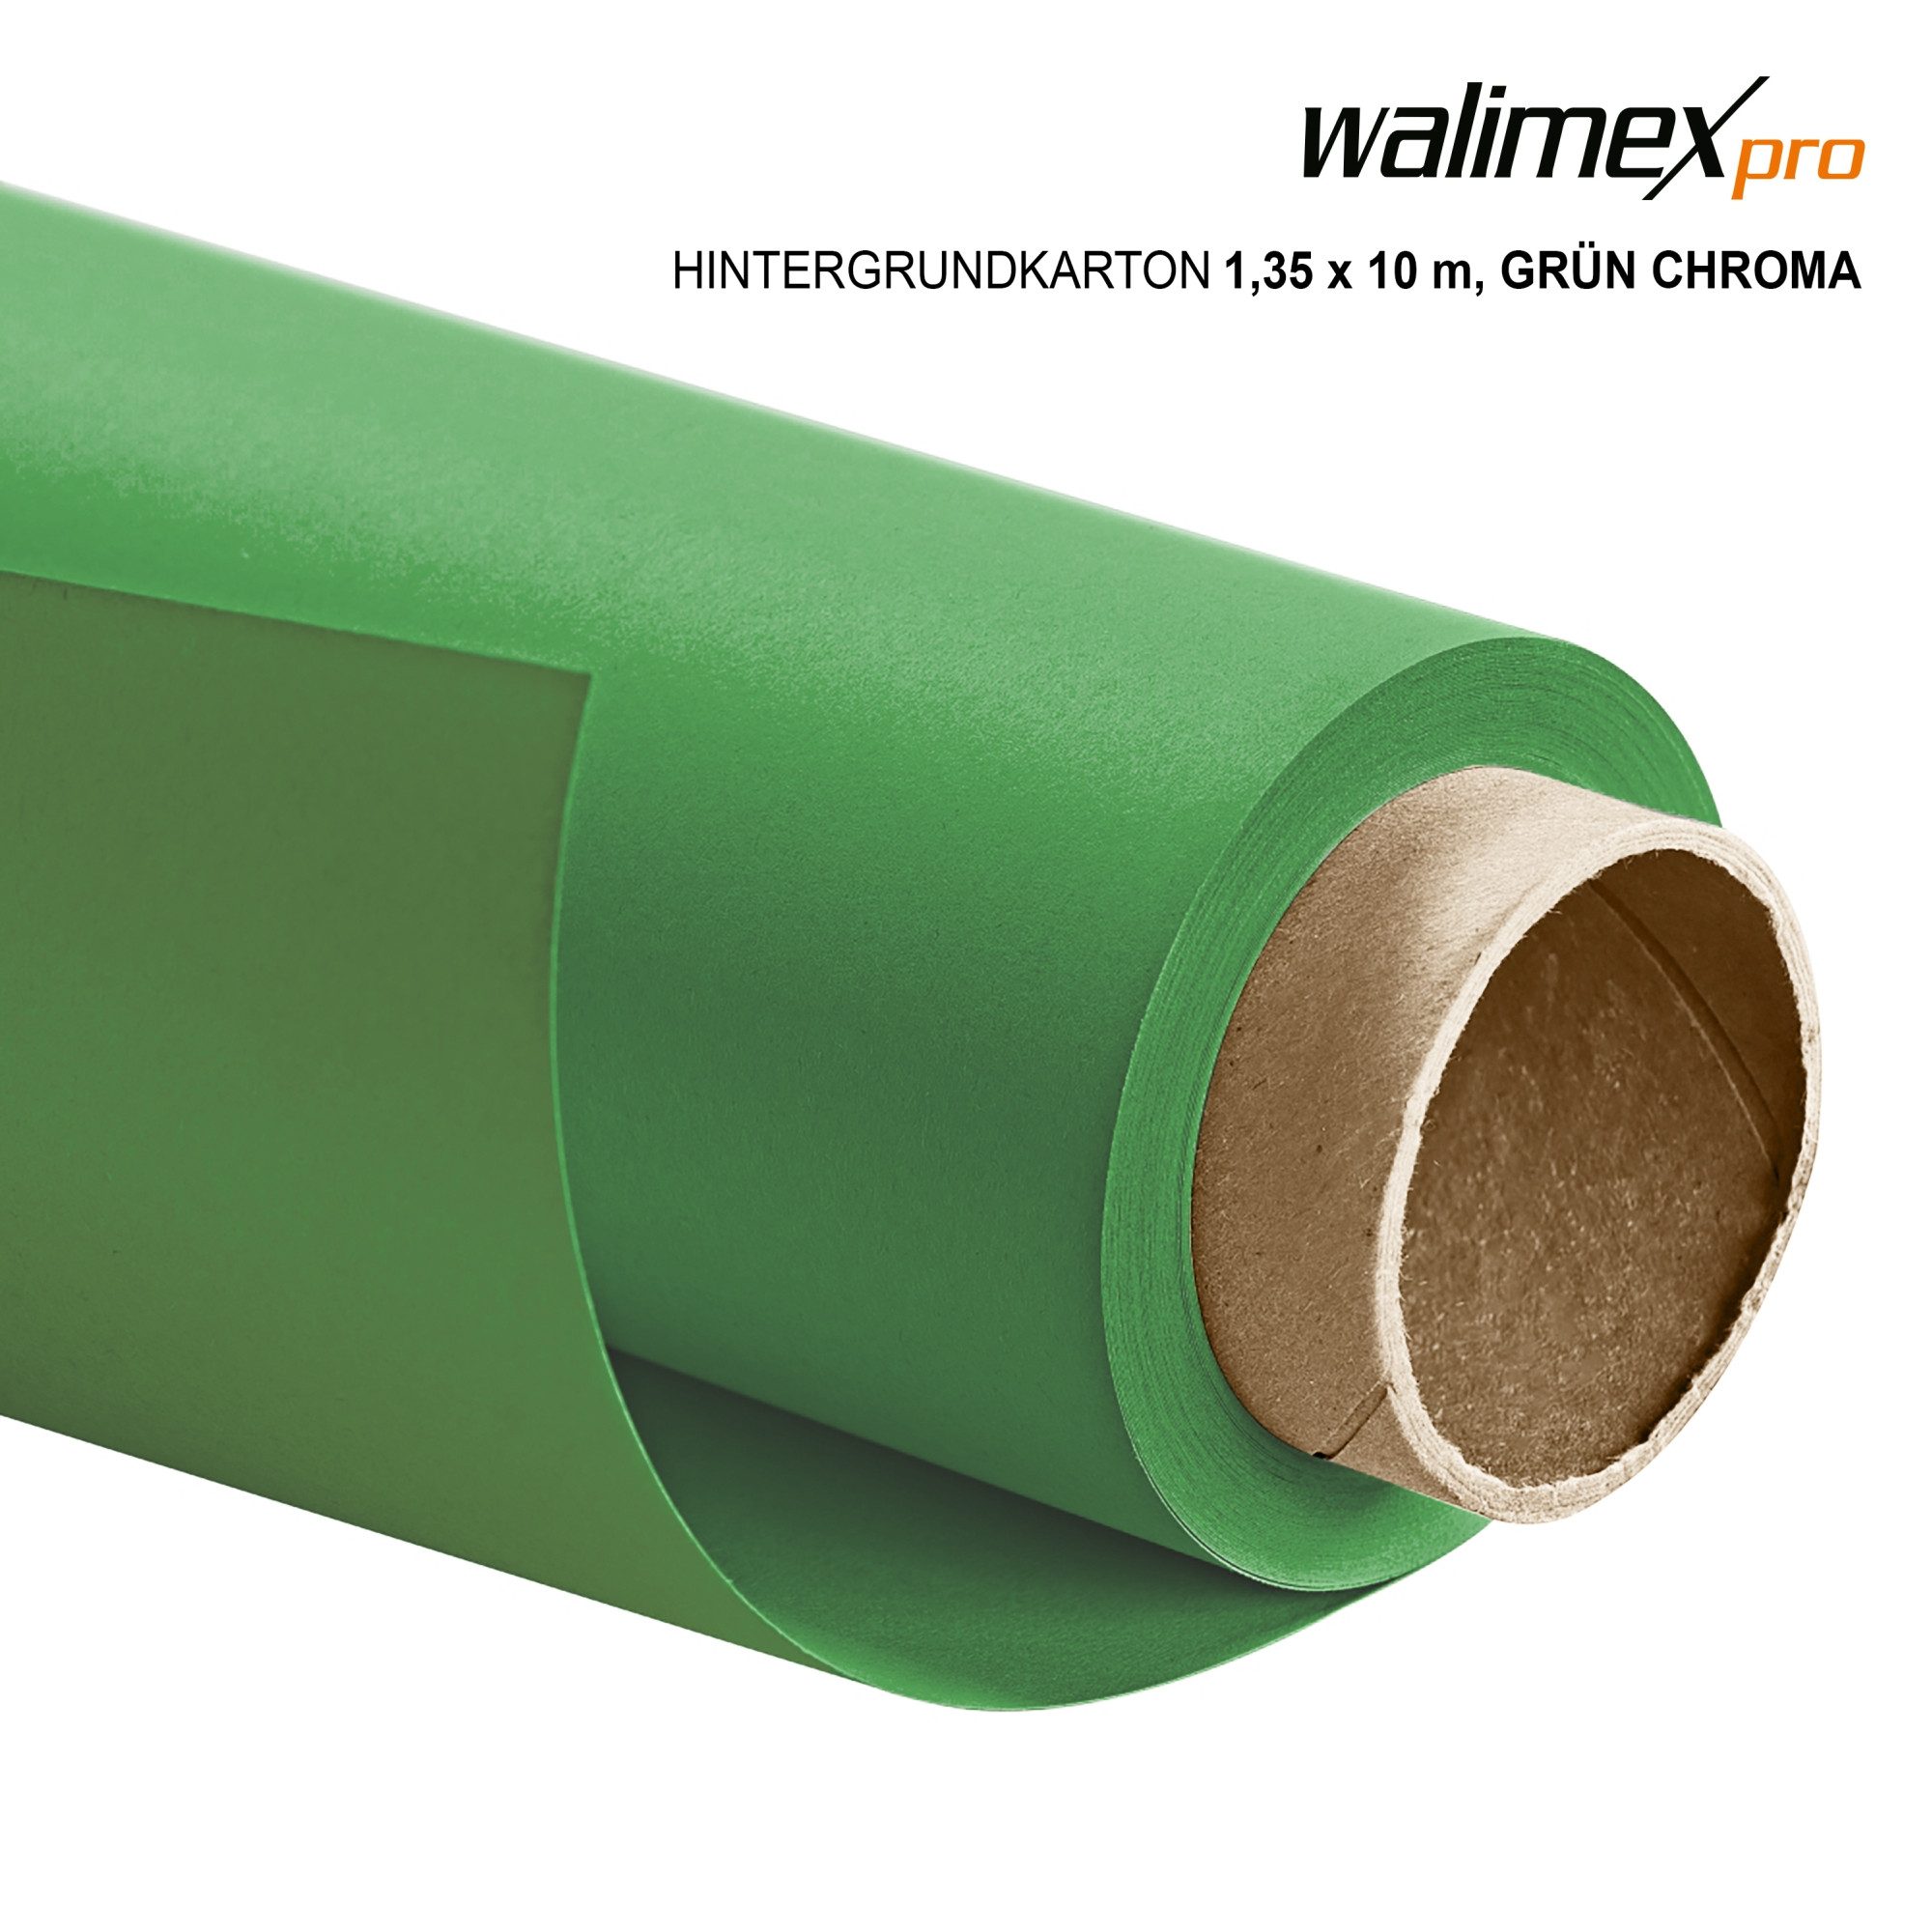 Walimex Pro Fotohintergrund Hintergrundkarton 1,35x10m,grün chroma